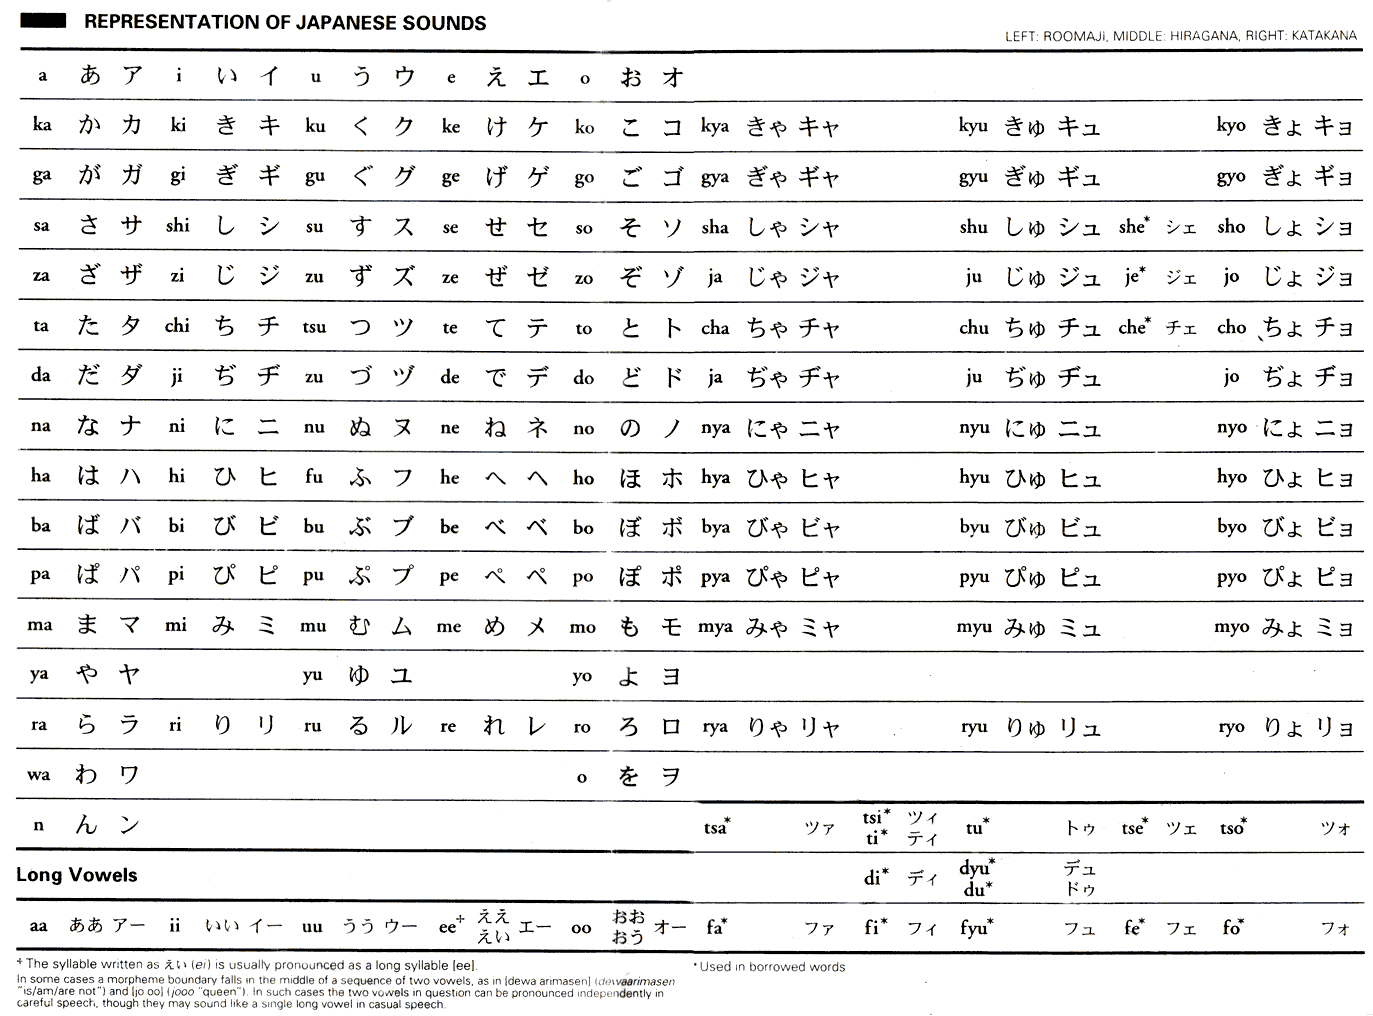 alfabeto hiragana, katakana y románico